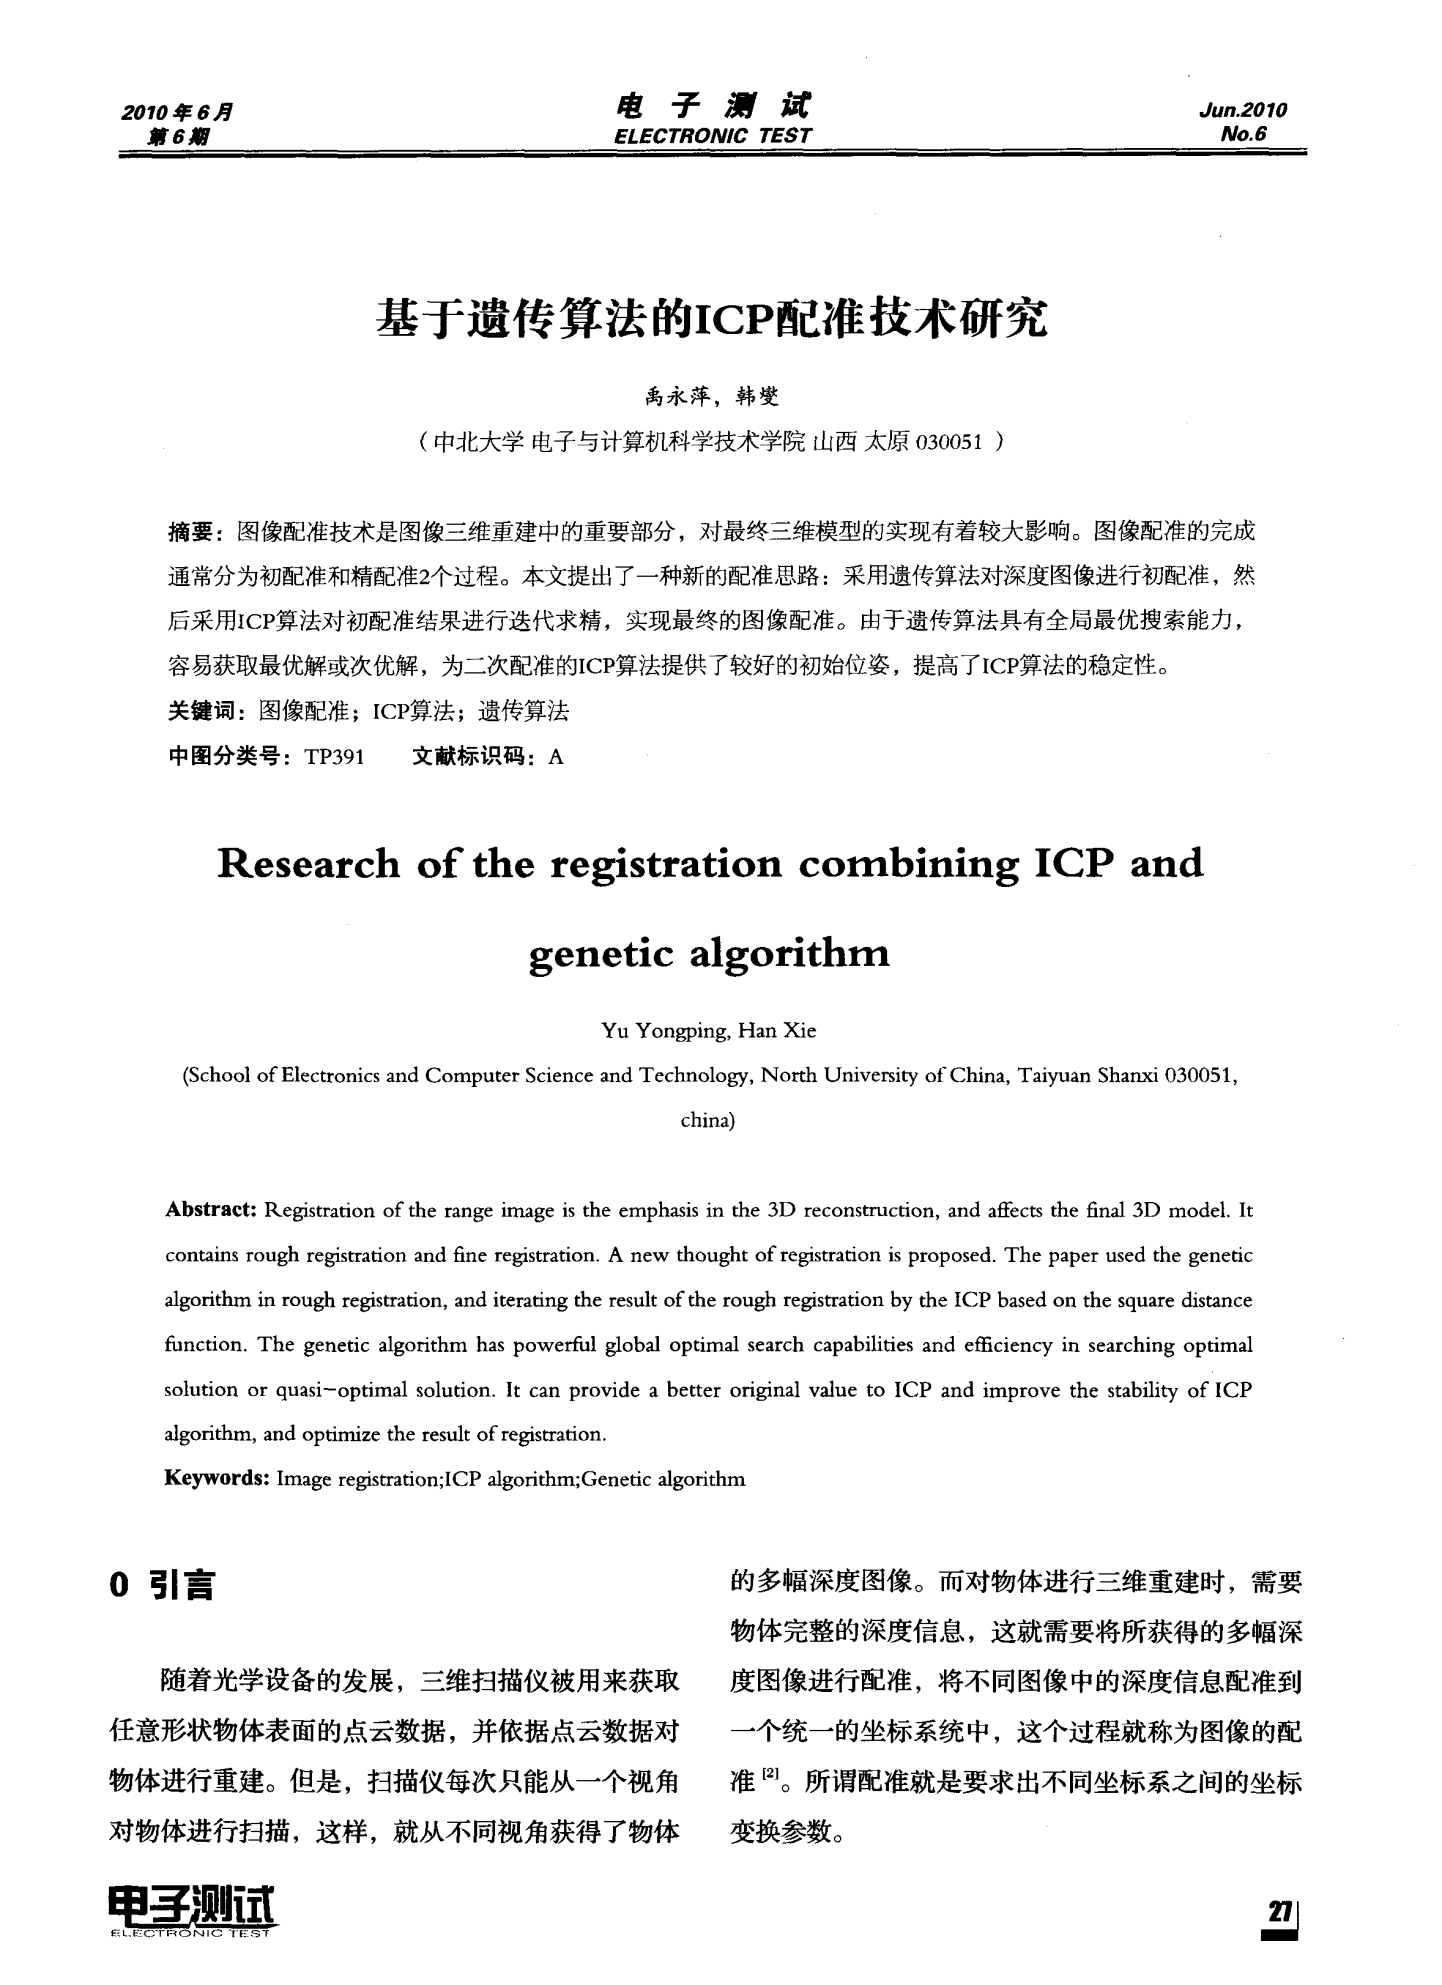 基于遗传算法的ICP配准技术研究